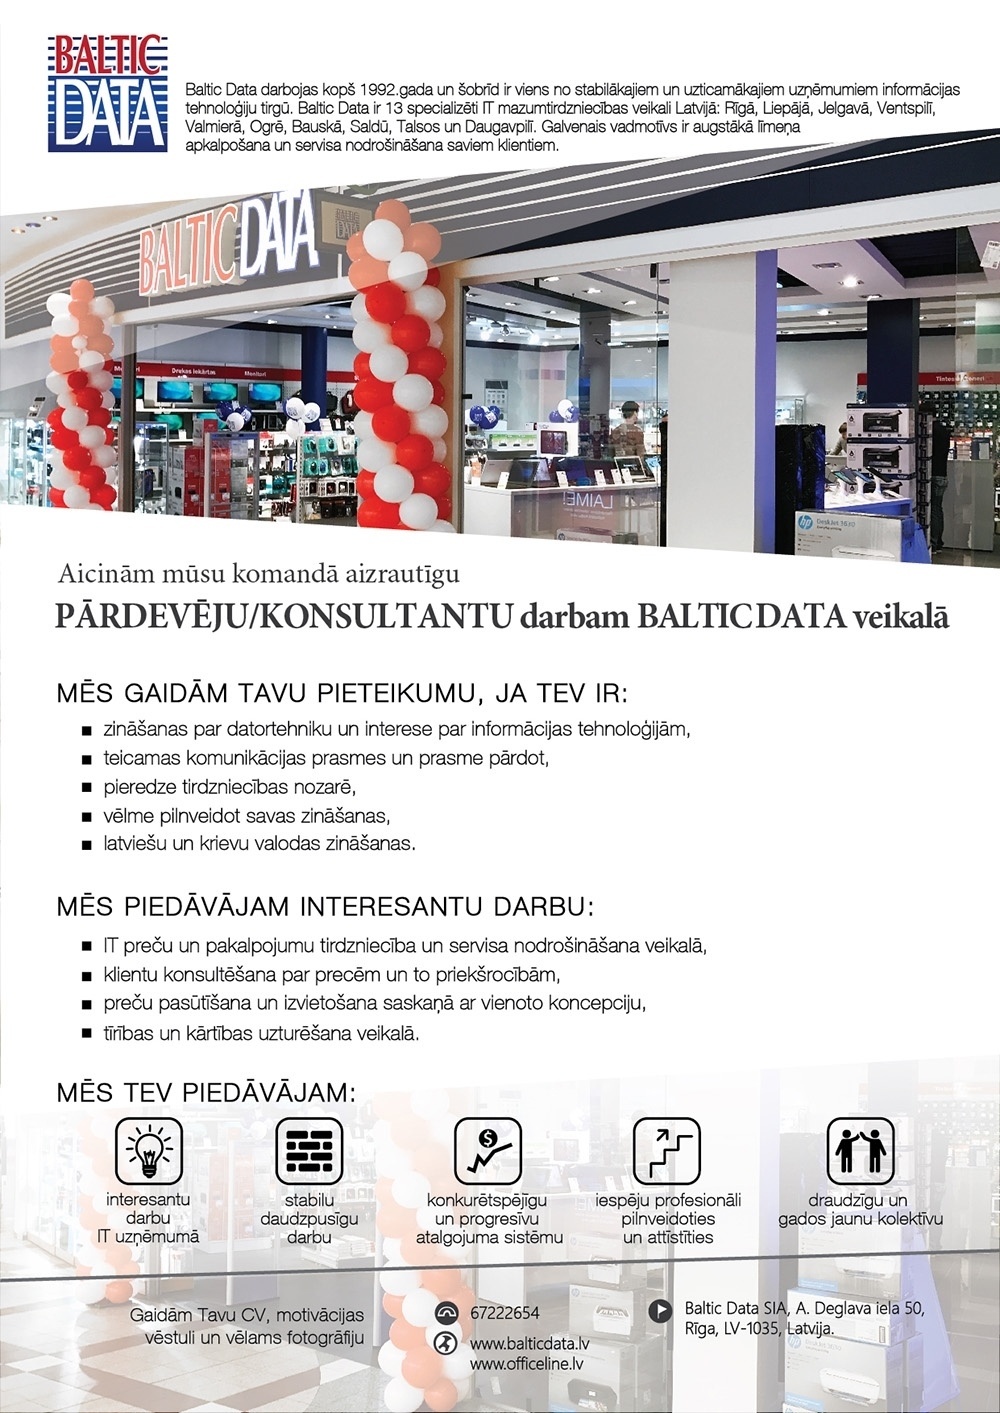 Baltic Data, SIA Pārdevējs/a - konsultants/e veikalā Talsos, t/c "Jāņa Centrs"